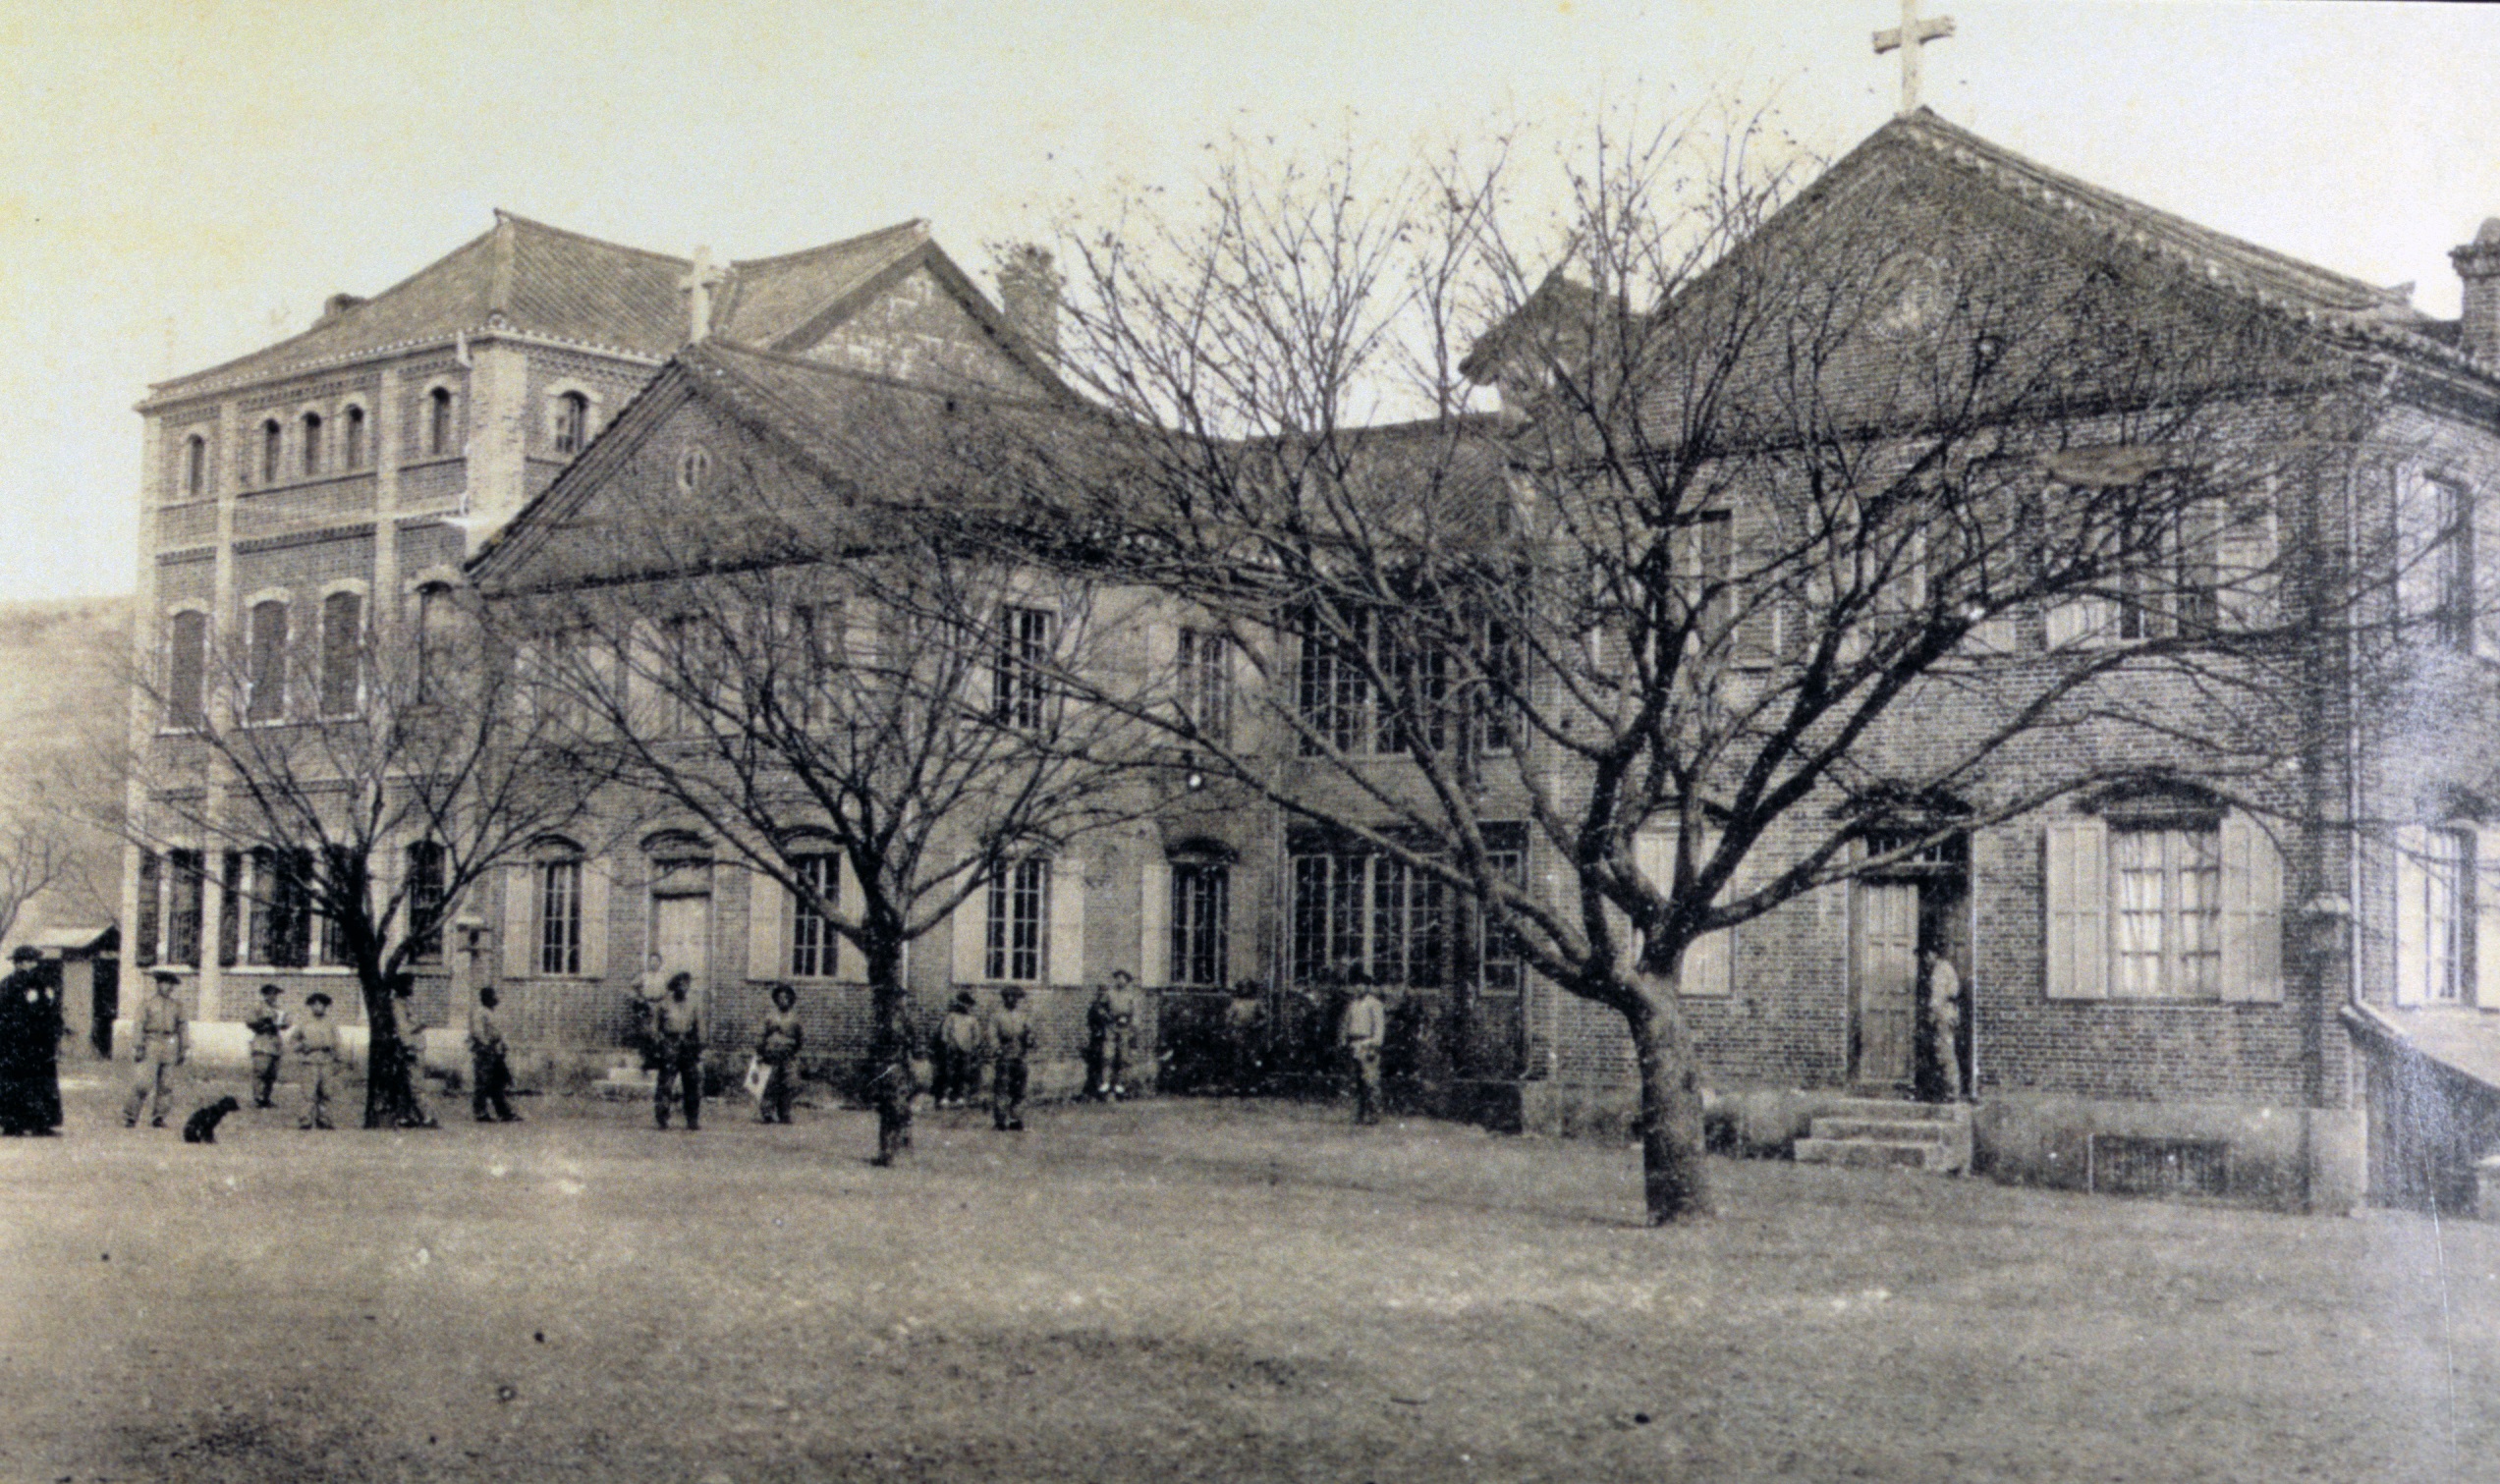 용산 예수성심신학교(1887~1942) (1)의 관련된 이미지 입니다.